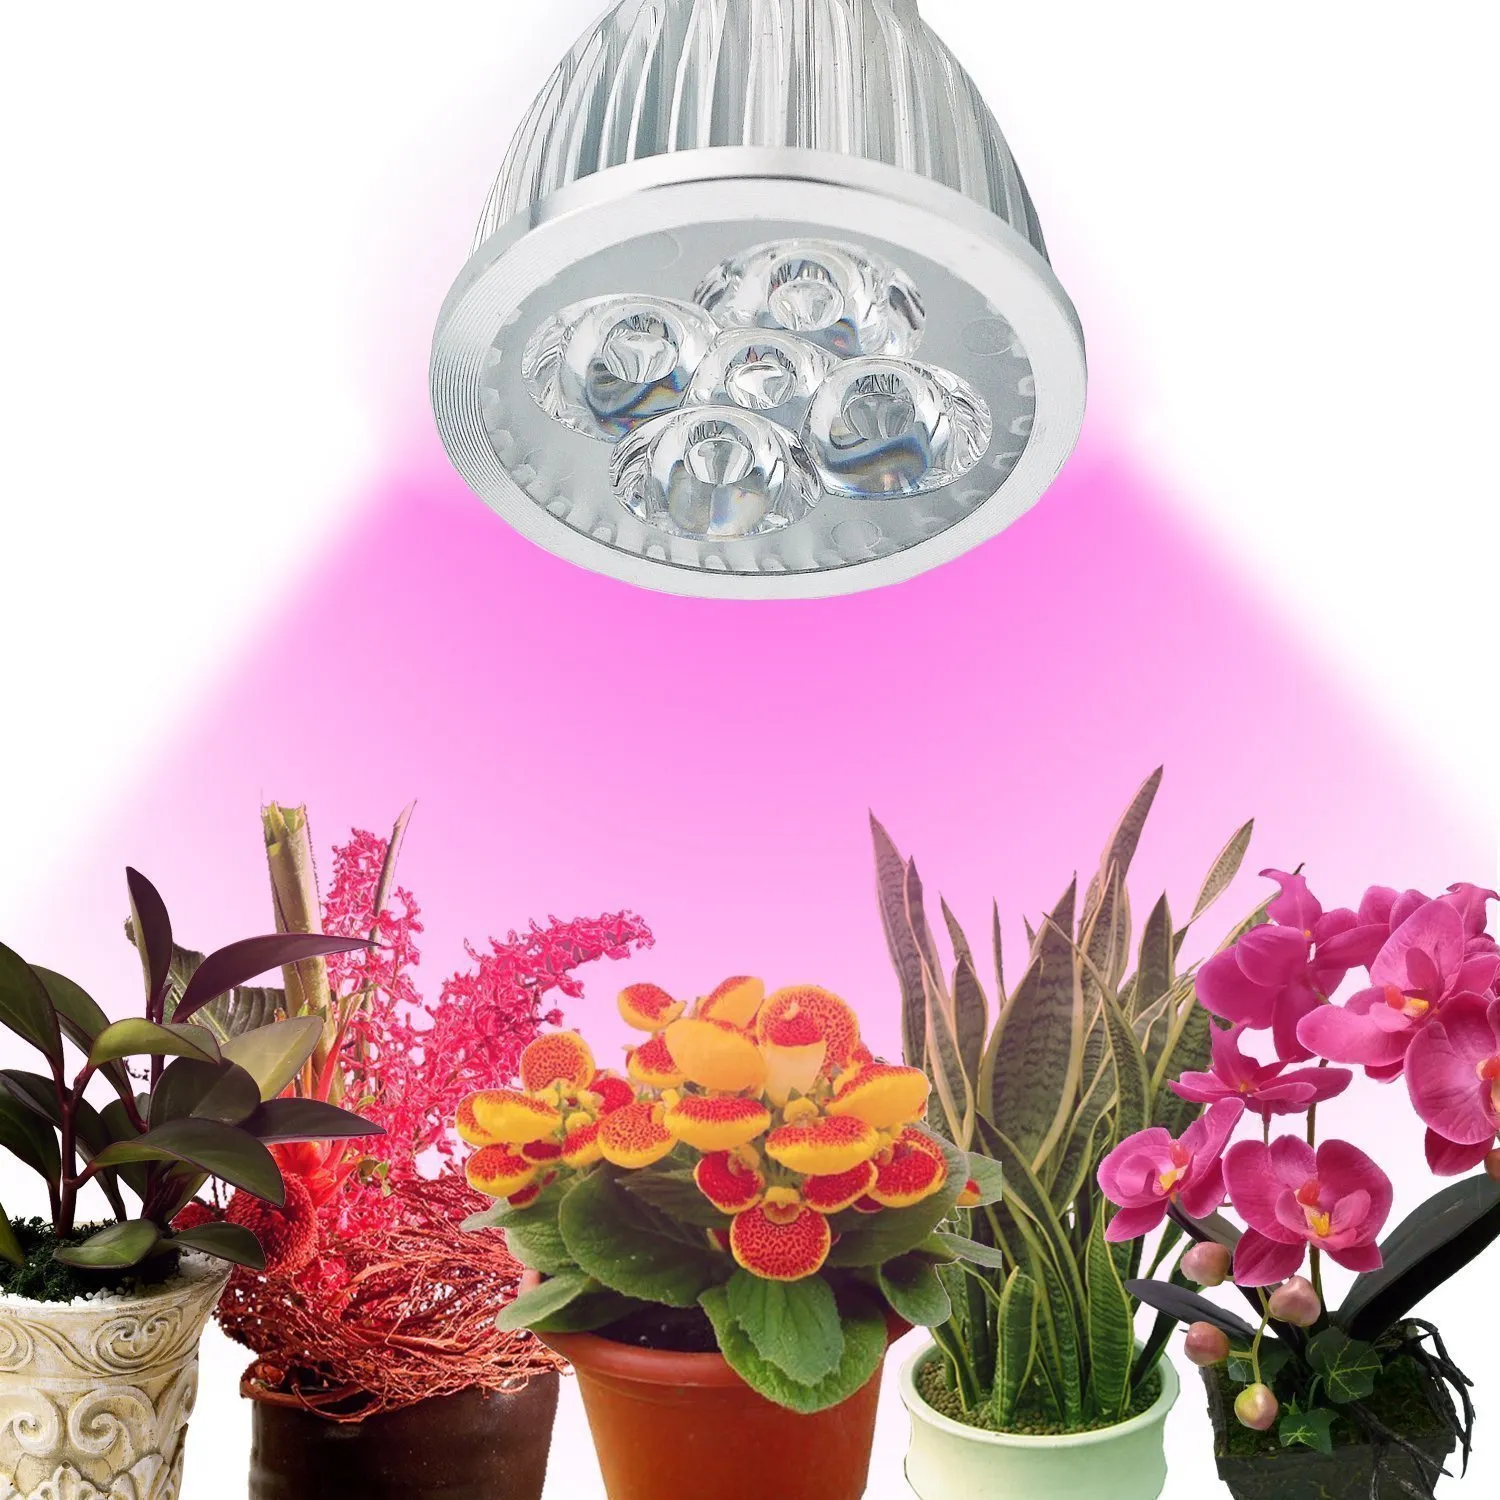 LED-växt växer ljus 5W E27 lampa röd / blå för inomhus blomma hydroponics system